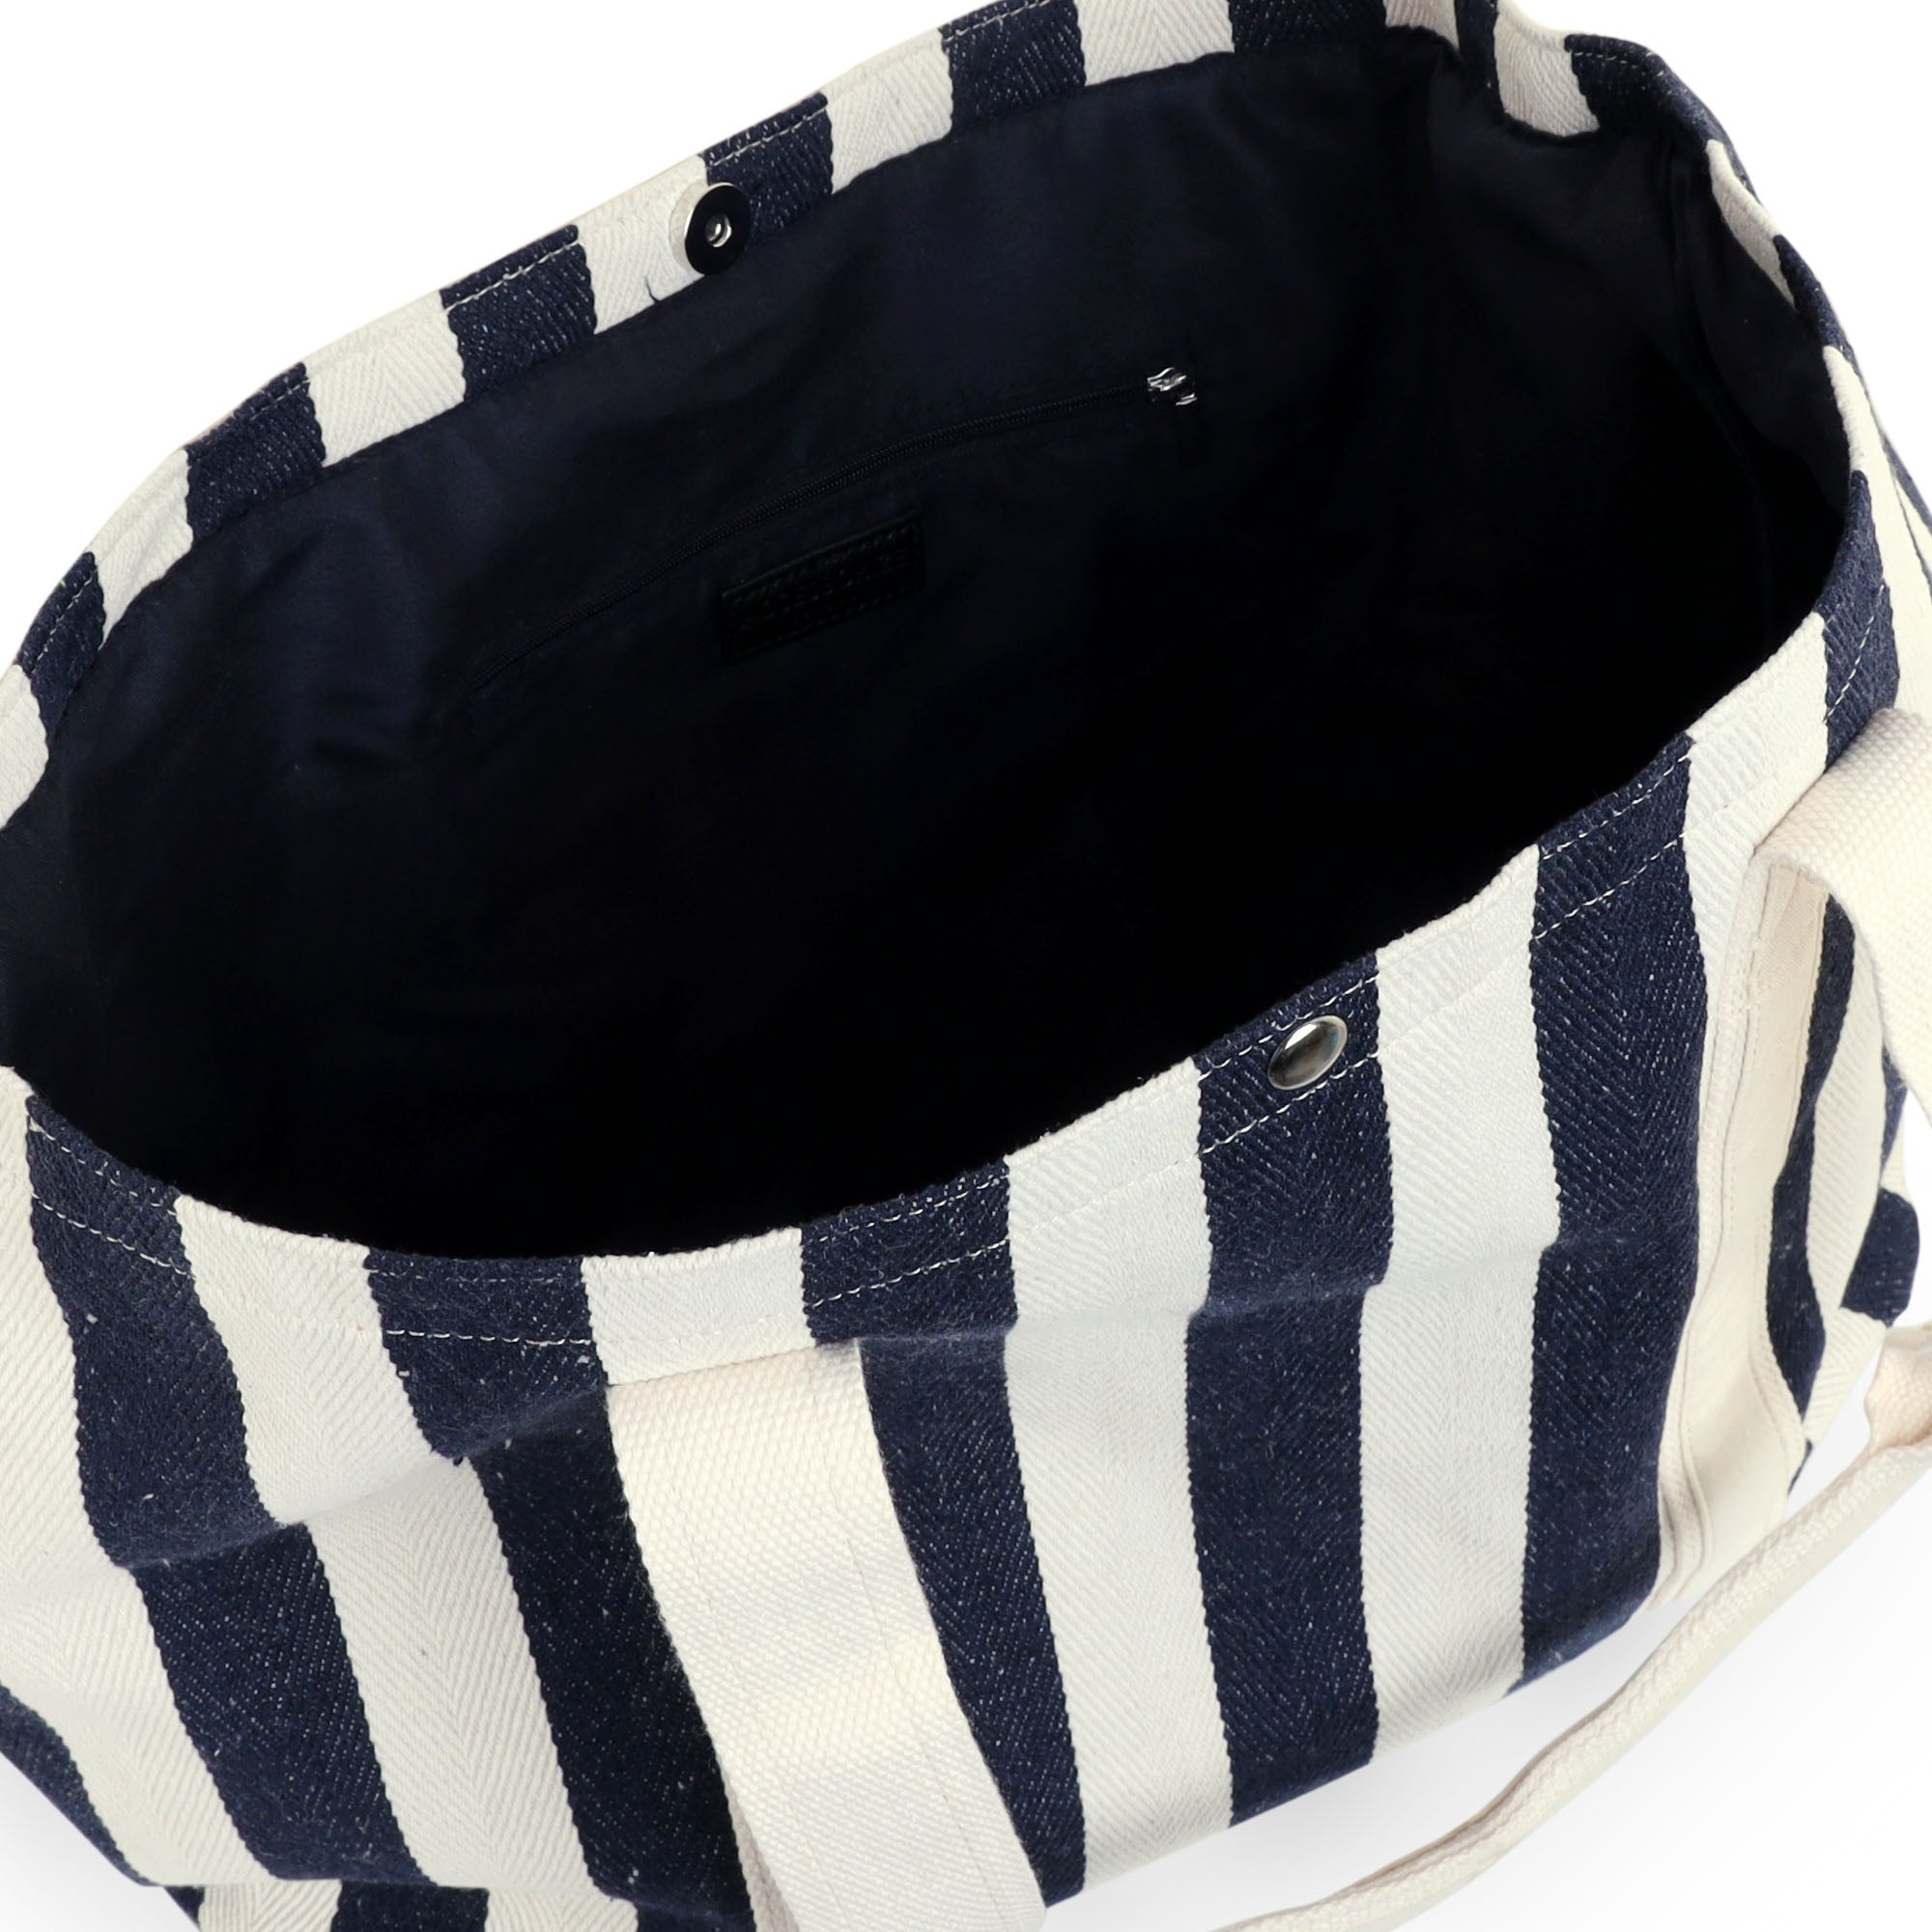 Accessorize London Women's Faux Leather Beige Stripe shopper Bag